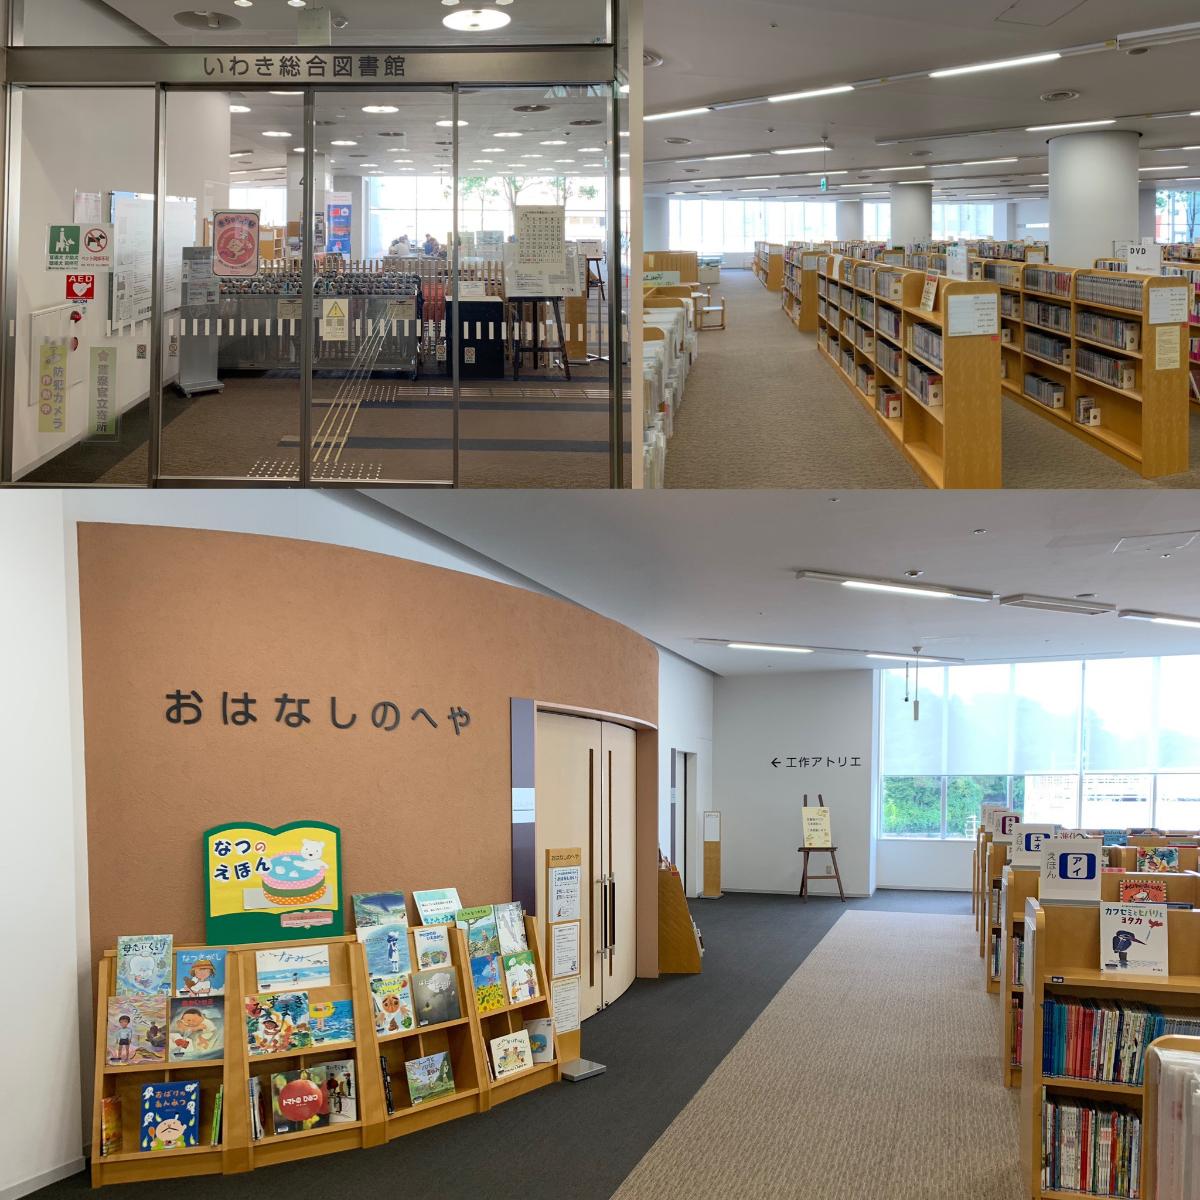 いわき市平幕ノ内 土地 いわき総合図書館（ラトブ内）まで約1.3km～1.6km（徒歩17分～20分）　いわきで一番本が揃っている場所。それがいわき総合図書館。ラトブ4F、5Fの2フロアにわたり、本好きはもちろん、仕事の調べものもできて何度も足を運びたくなる総合図書館です。中でもおすすめは定期的に開催している赤ちゃんへのお話し会など、読み聞かせ企画があります。これを楽しみにしている子育て世代の奥様たちの情報交換、交流の場にもなっています。